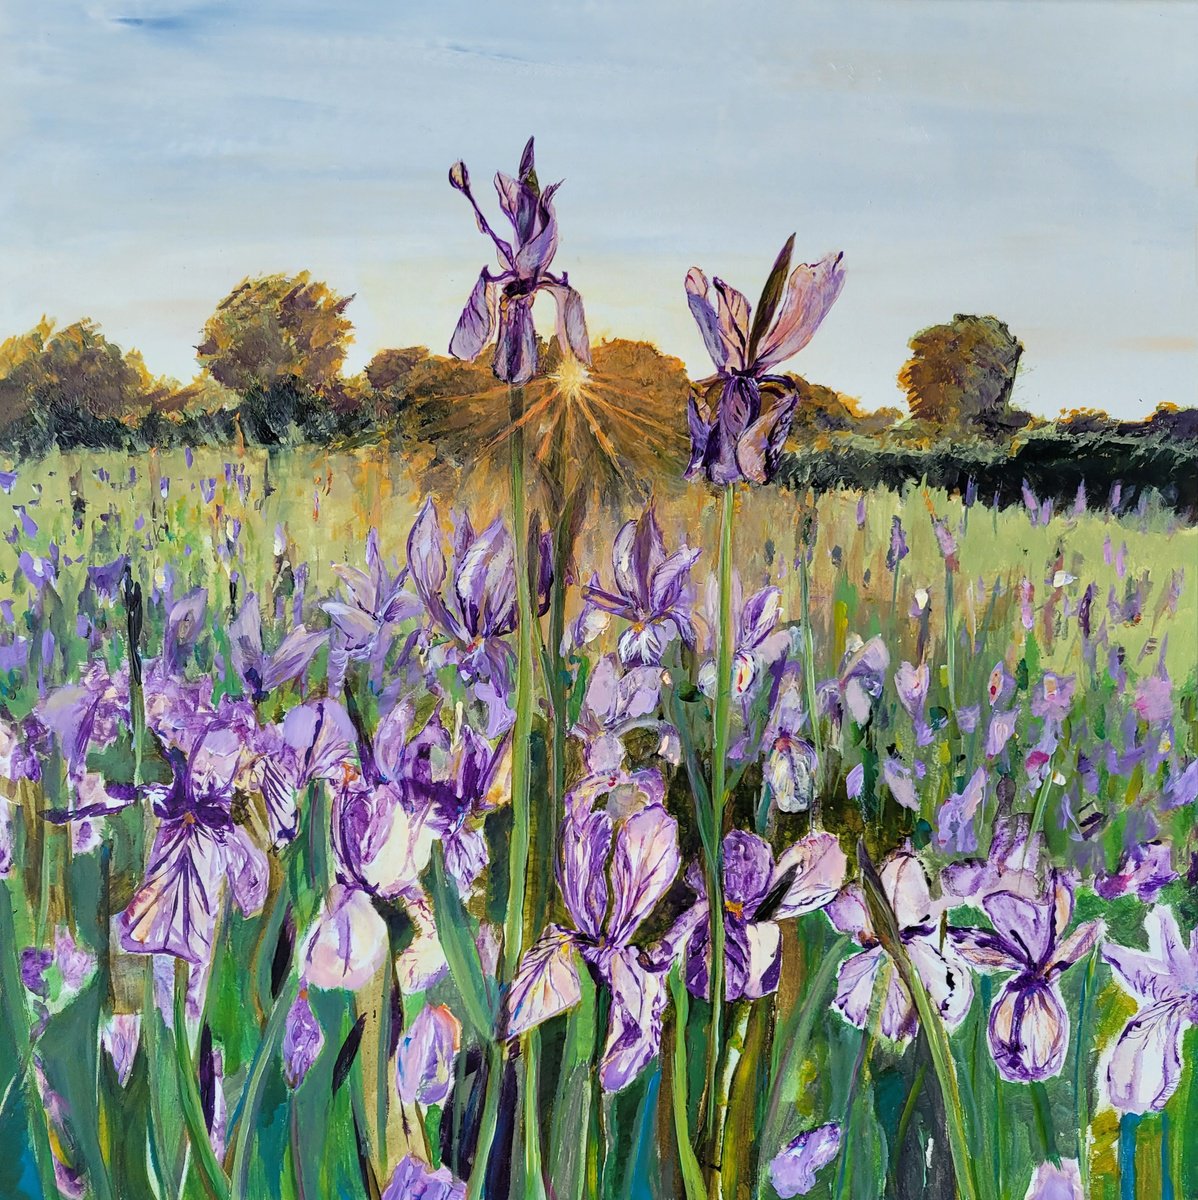 Iris in sunrise. Flower field. by Kathrin Fl�ge